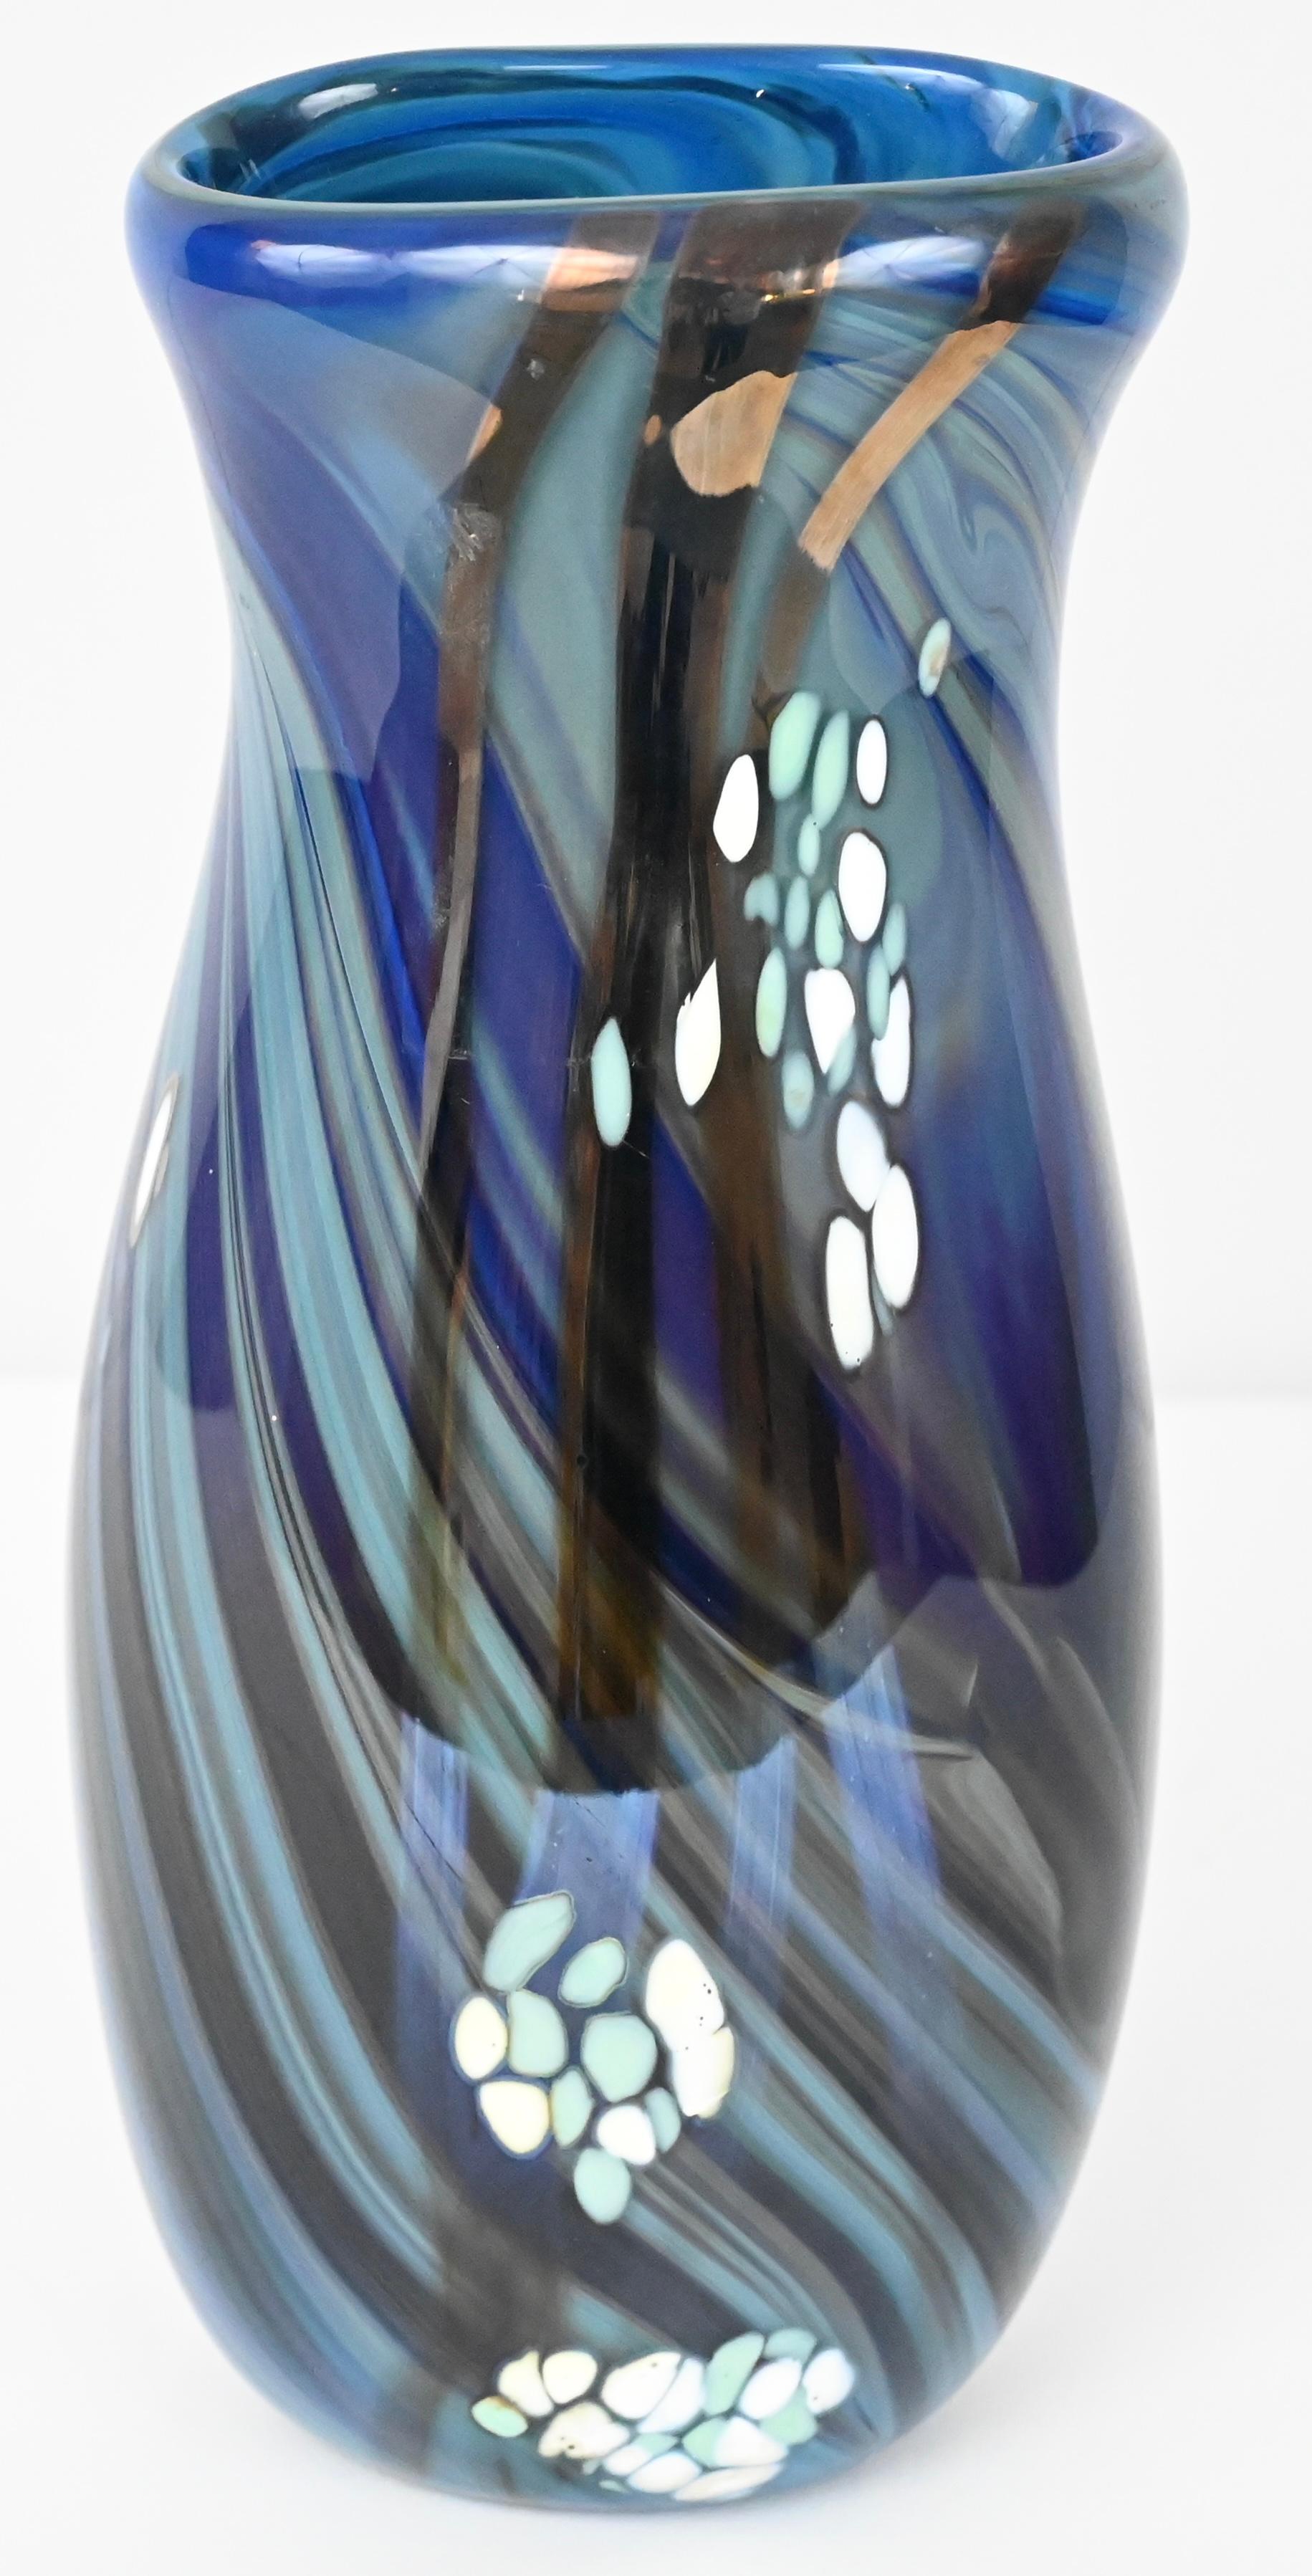 20th Century Mid-Century Art Glass Flower Vase Signed Swispot, Blue and White Art Glass Vase For Sale